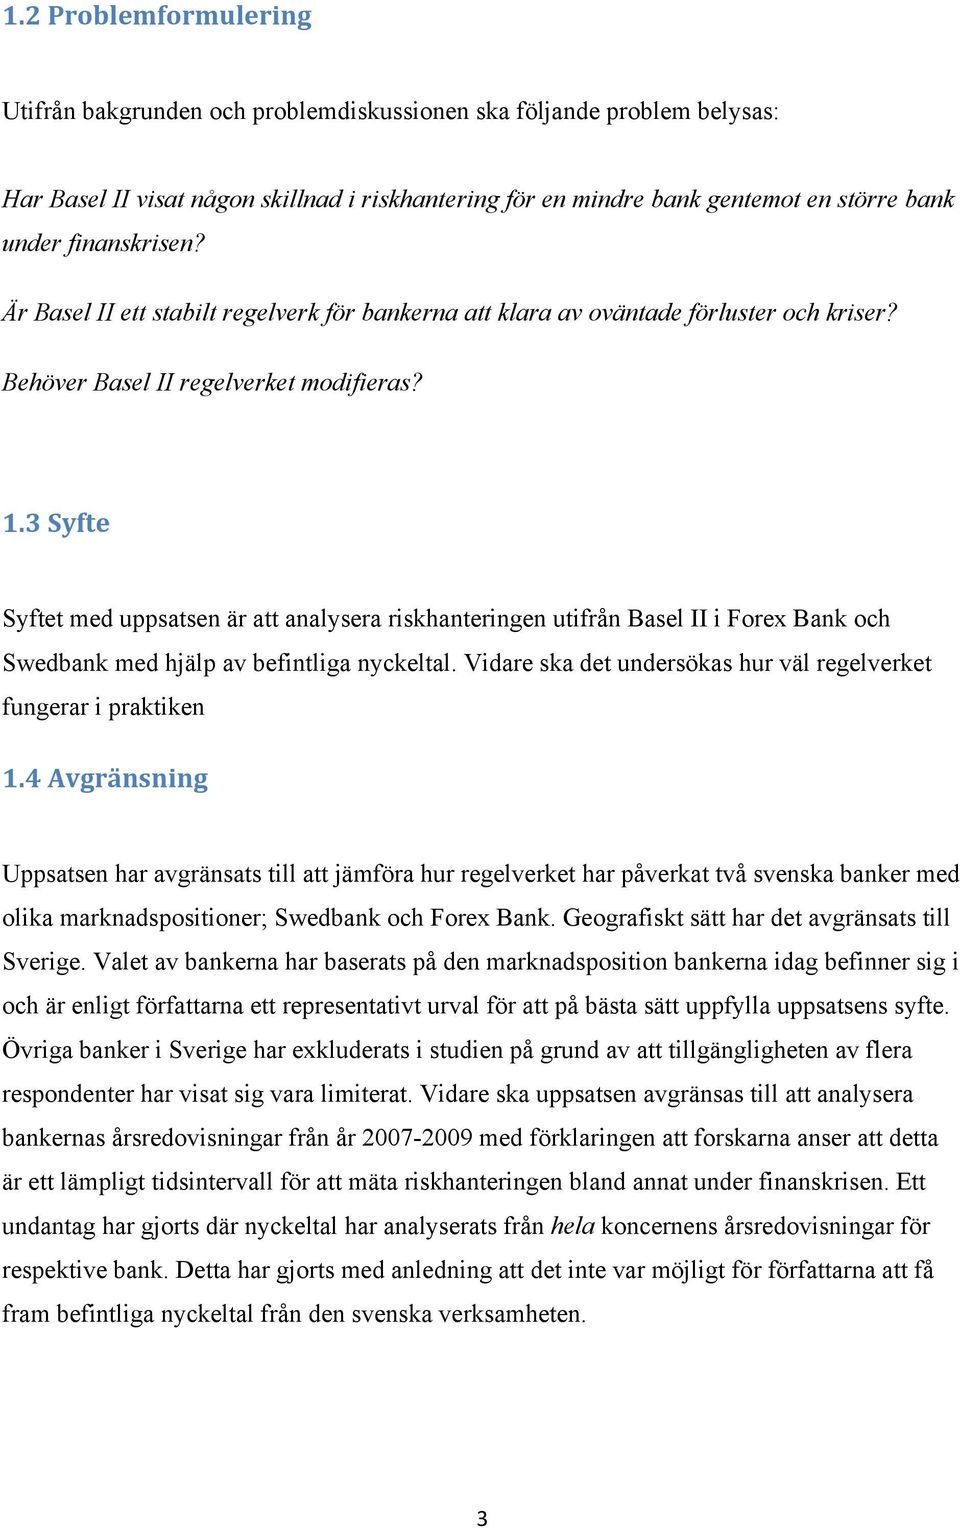 3 Syfte Syftet med uppsatsen är att analysera riskhanteringen utifrån Basel II i Forex Bank och Swedbank med hjälp av befintliga nyckeltal.